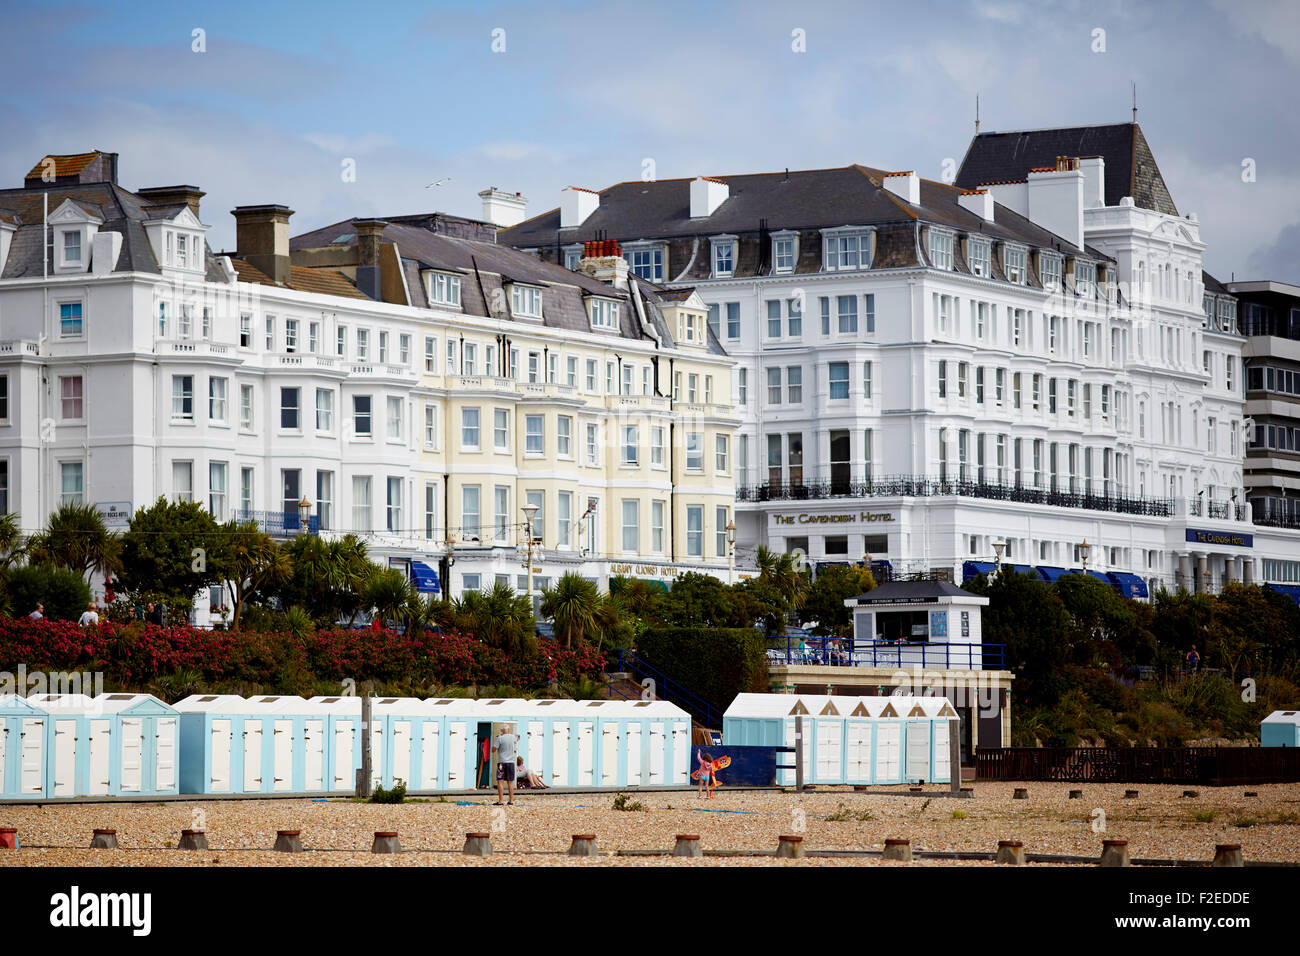 Hôtels bord de mer à Eastbourne, East Sussex, sur la côte sud de l'Angleterre Royaume-uni Grande-bretagne British United Kingdom Europe Eu Banque D'Images